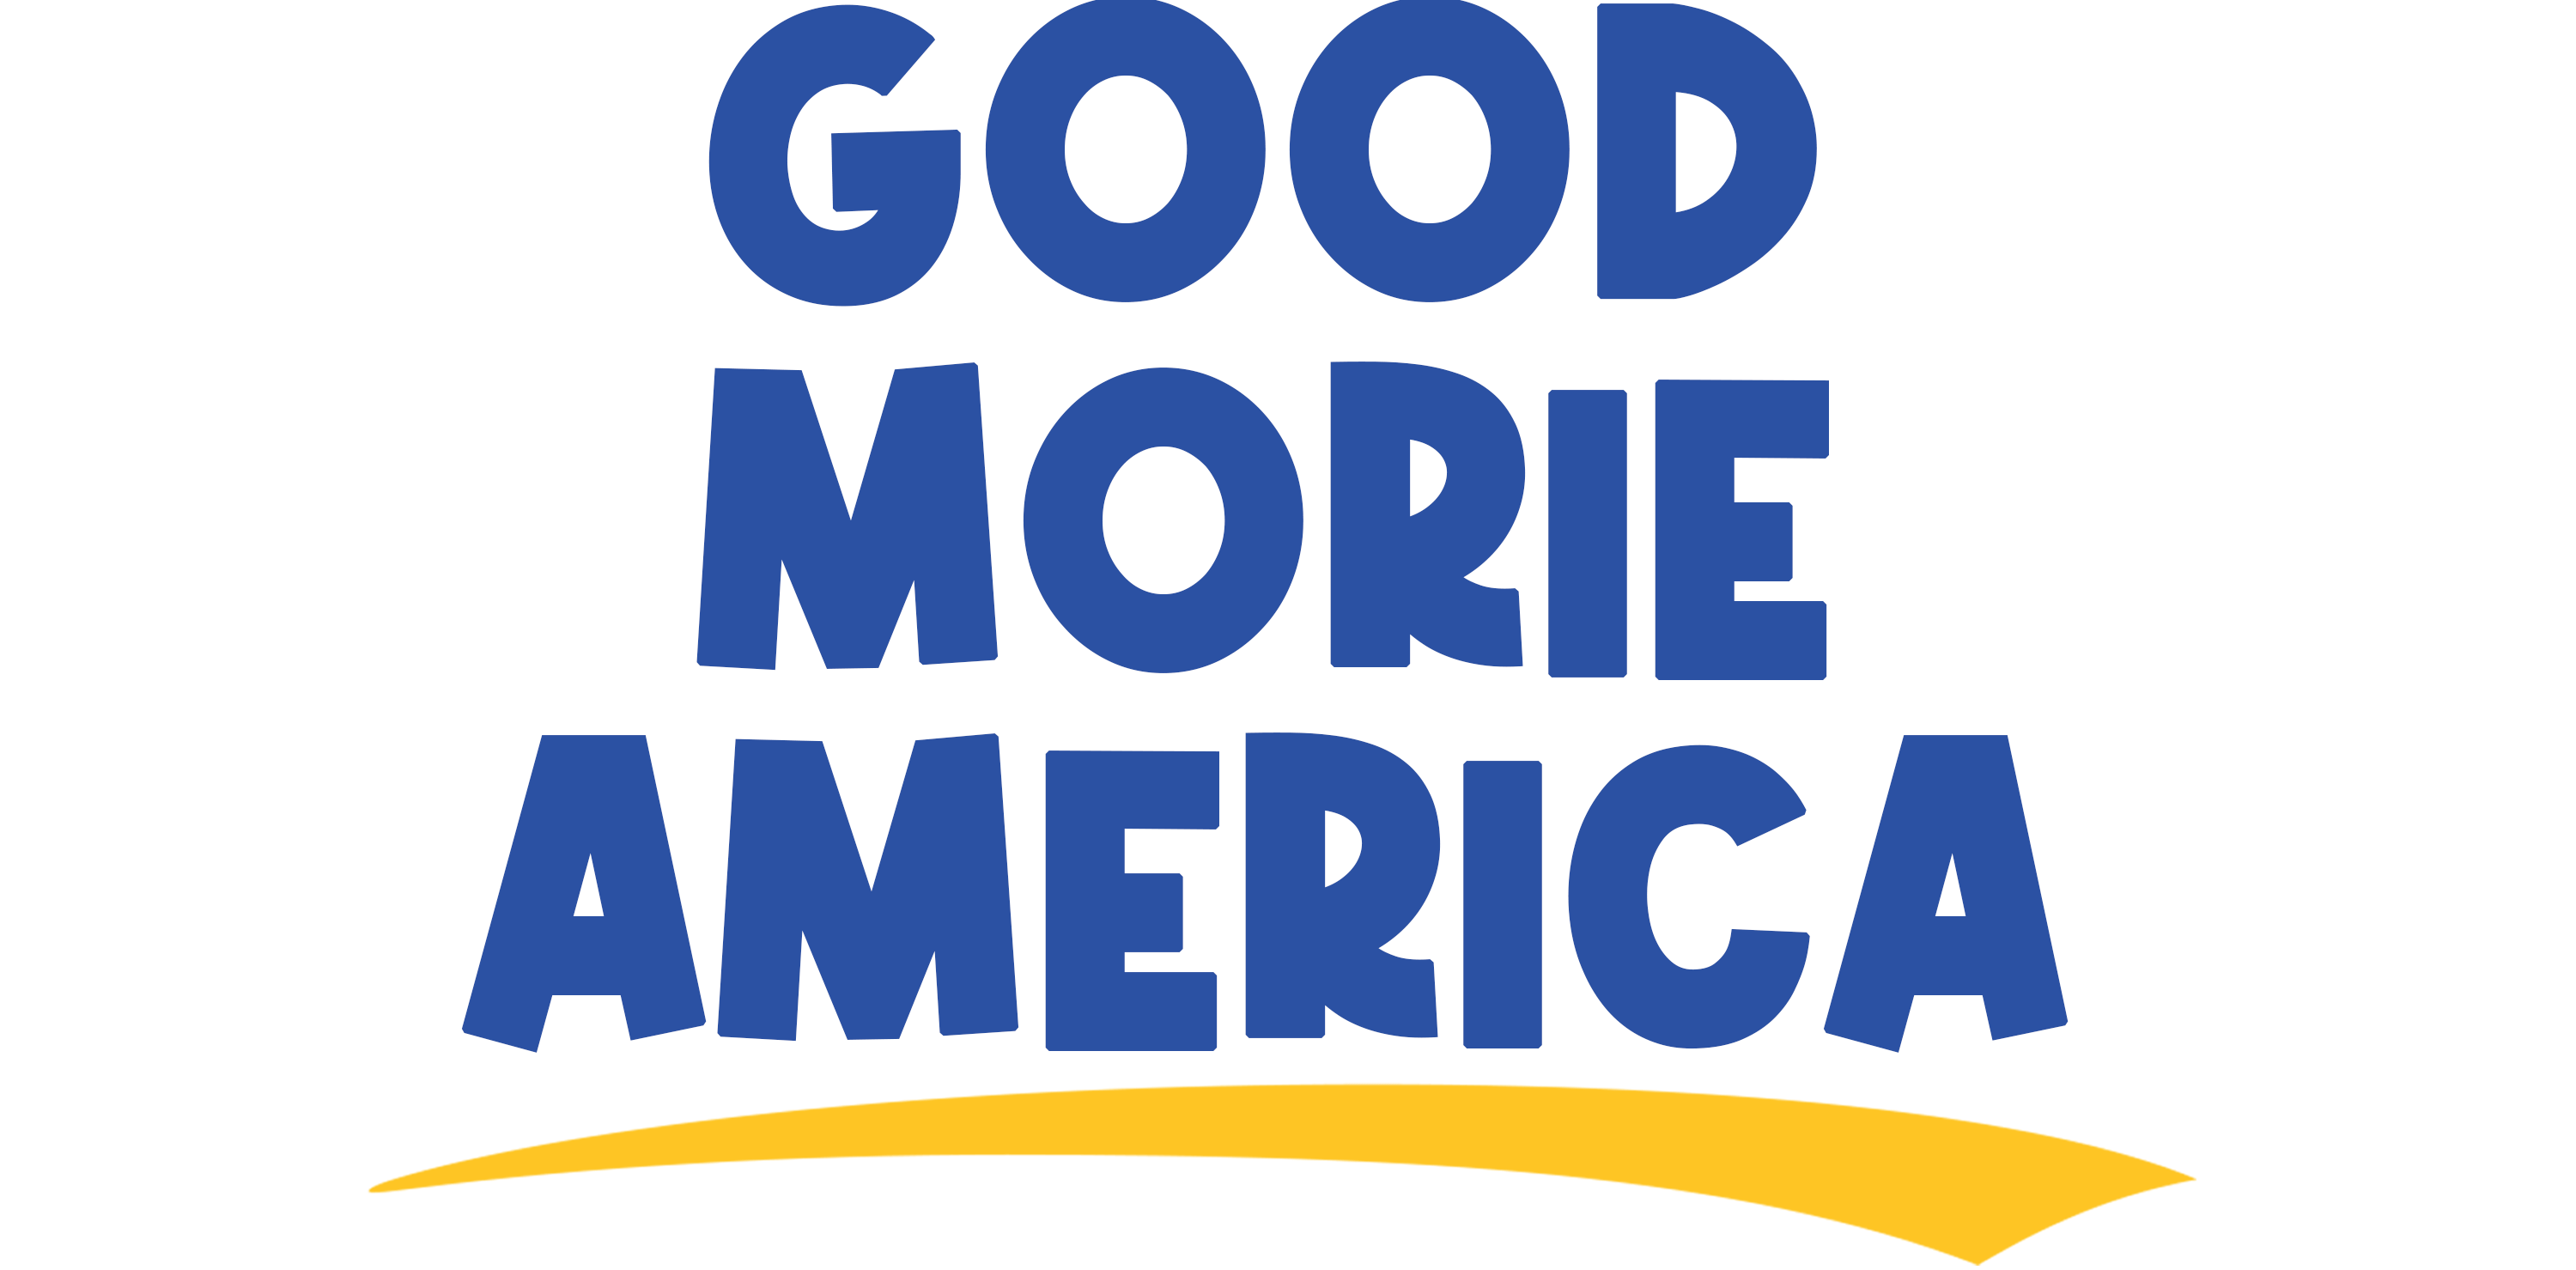 Good Morie America!